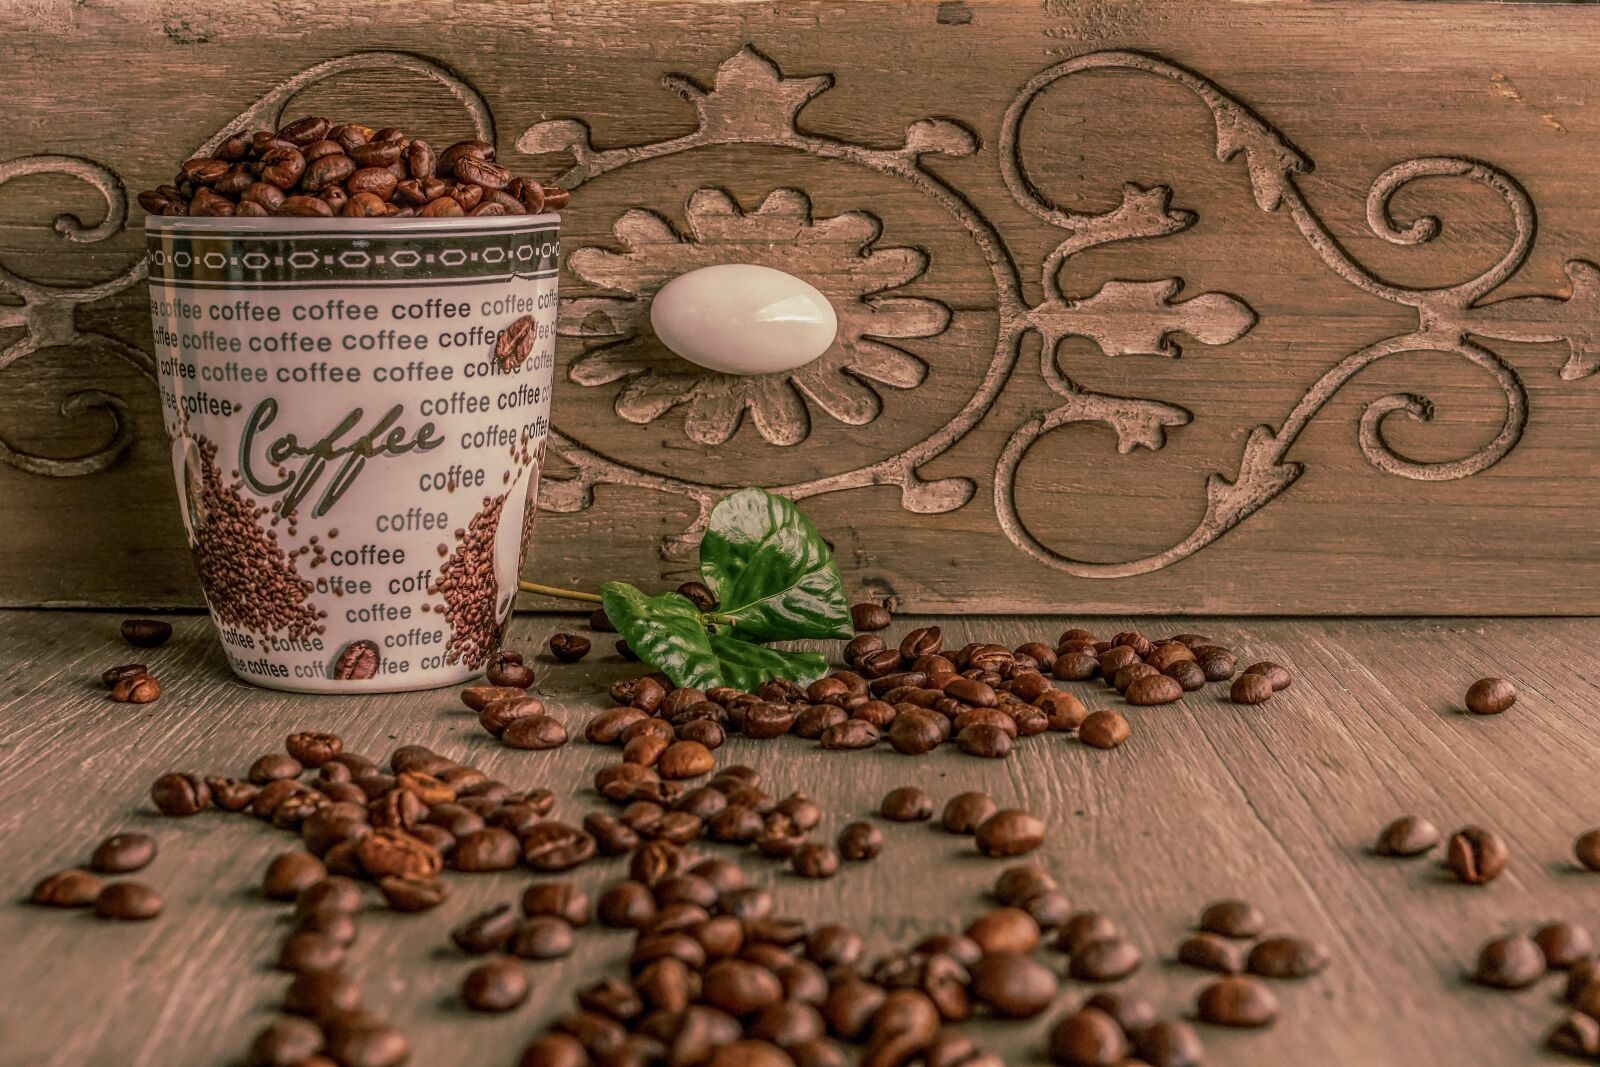 35mm F1.4 sample photo. Coffee cup, coffee, coffee photography